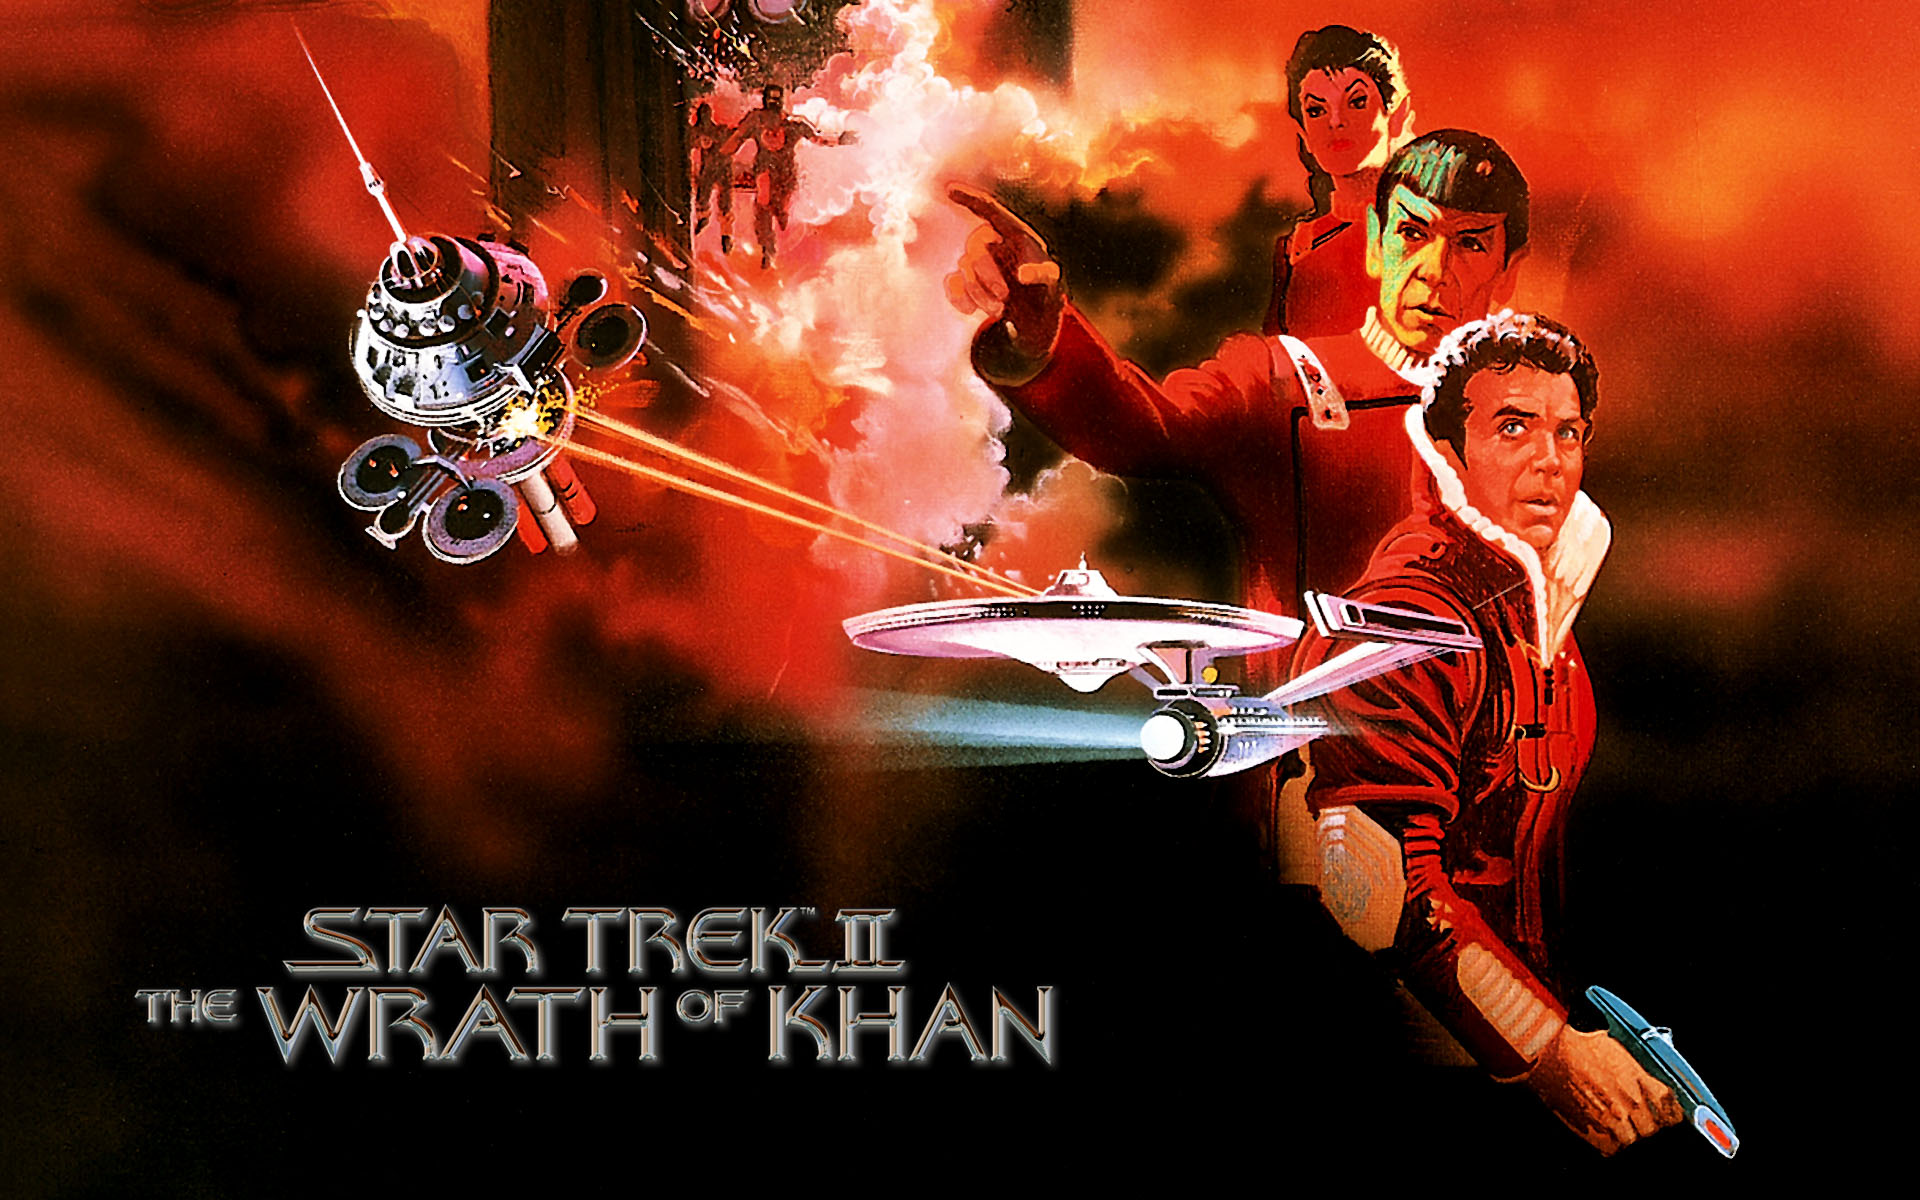 khan vs khan star trek